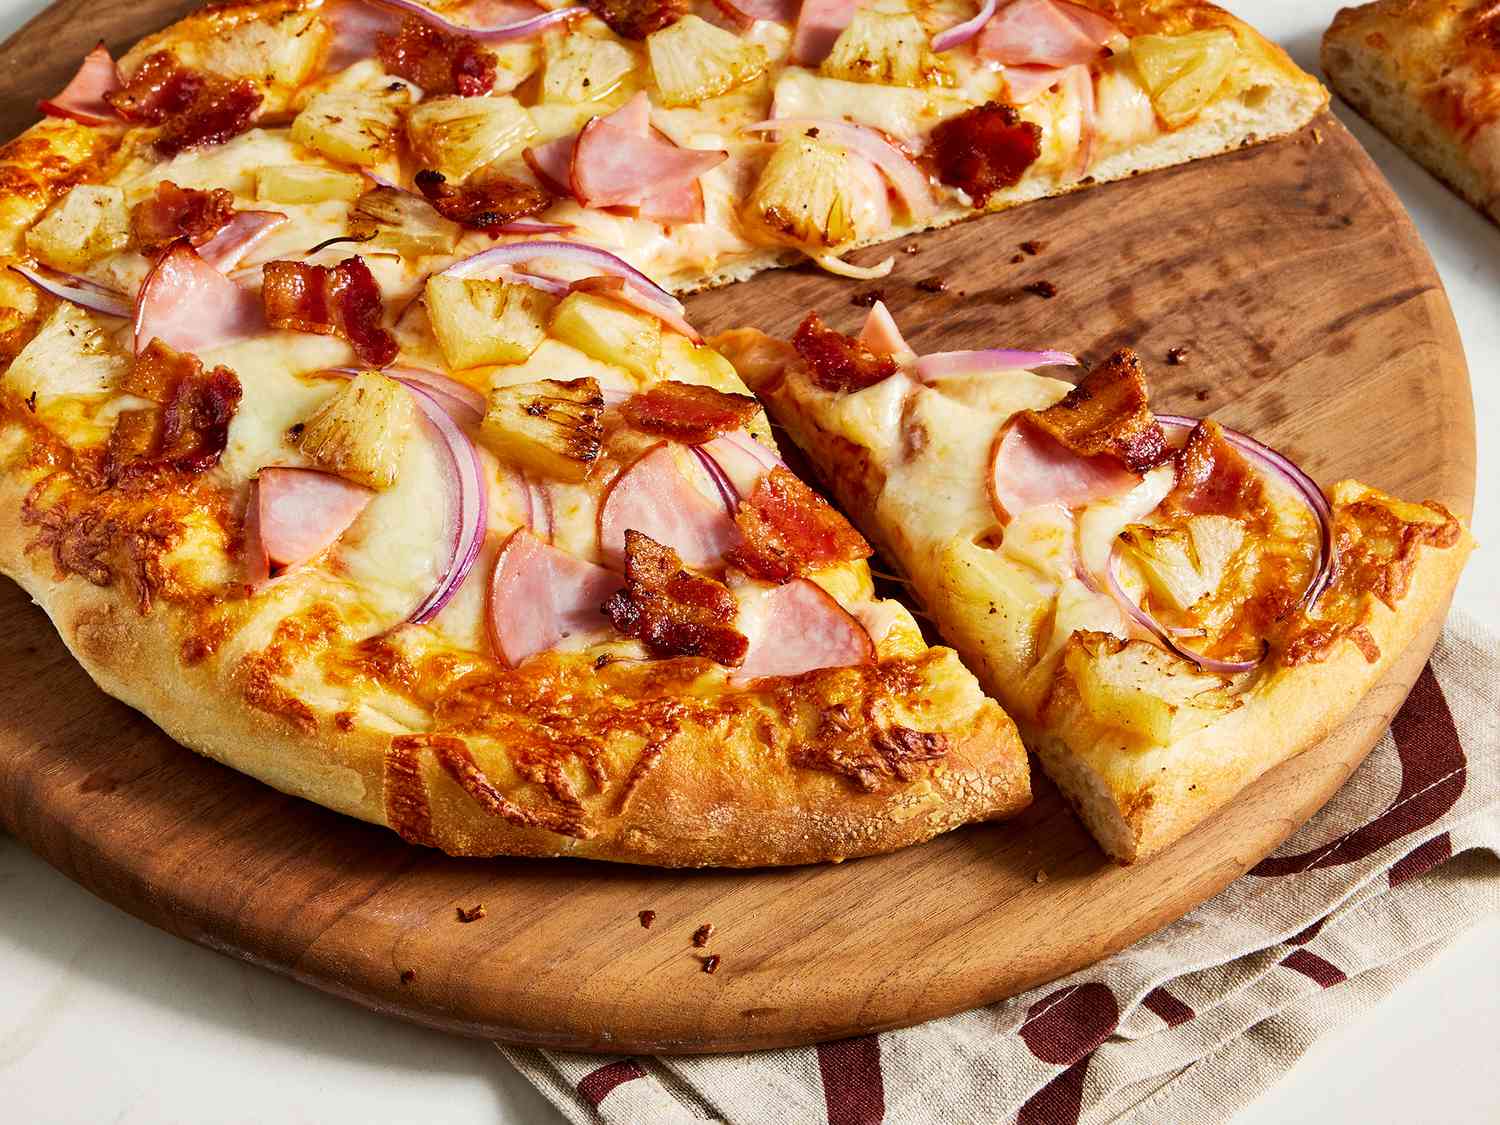 Image of Hawaiian pizza